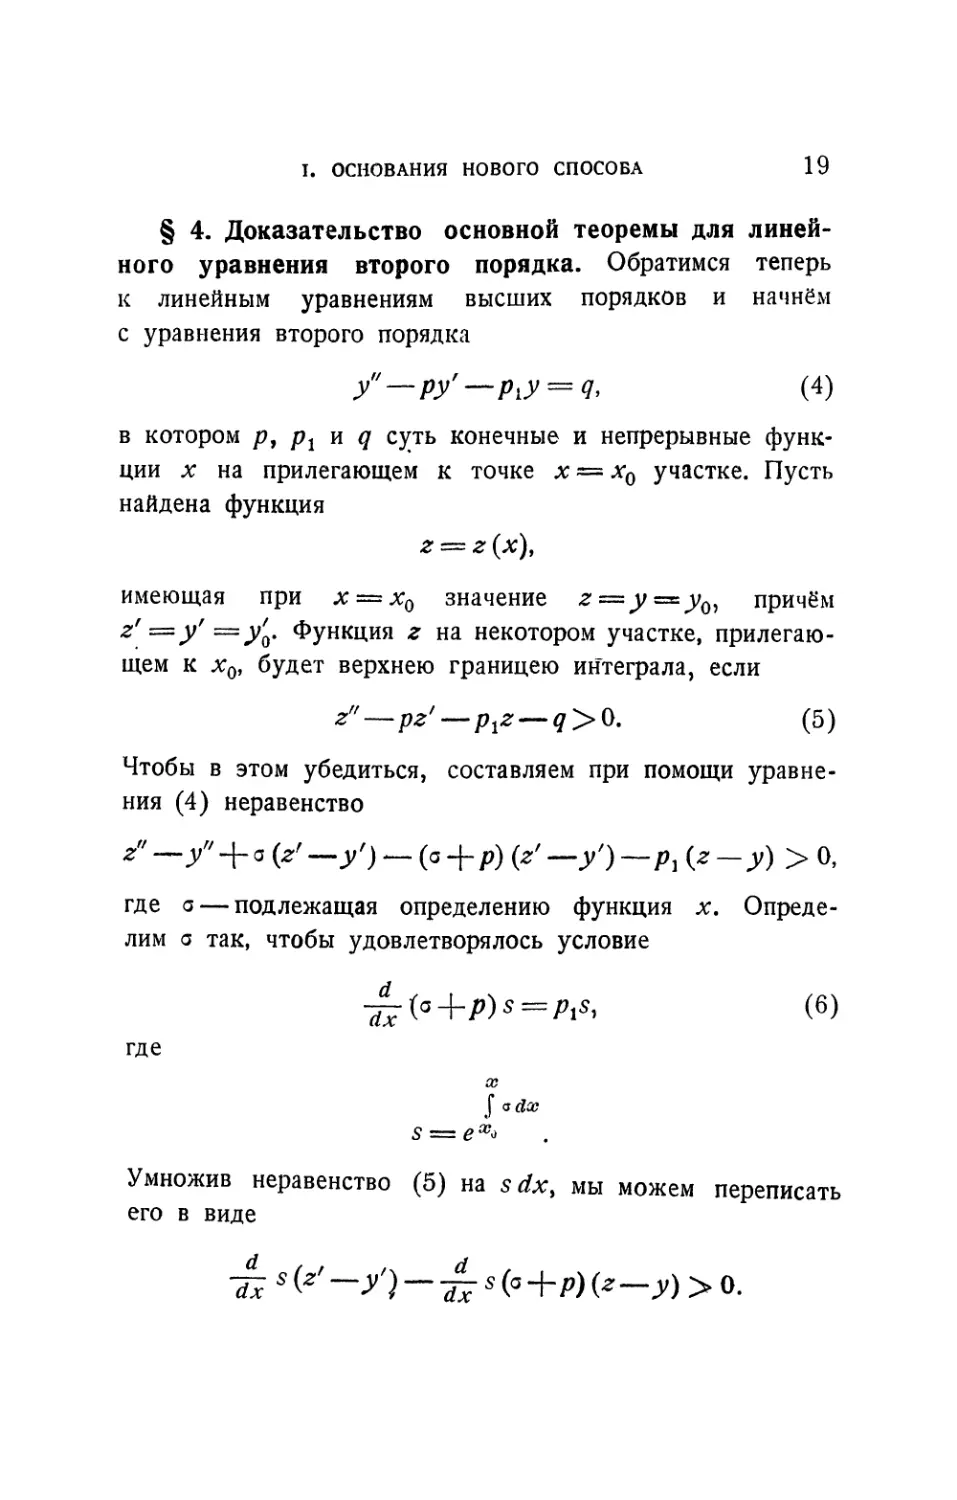 § 4. Доказательство основной теоремы для линейного уравнения второго порядка